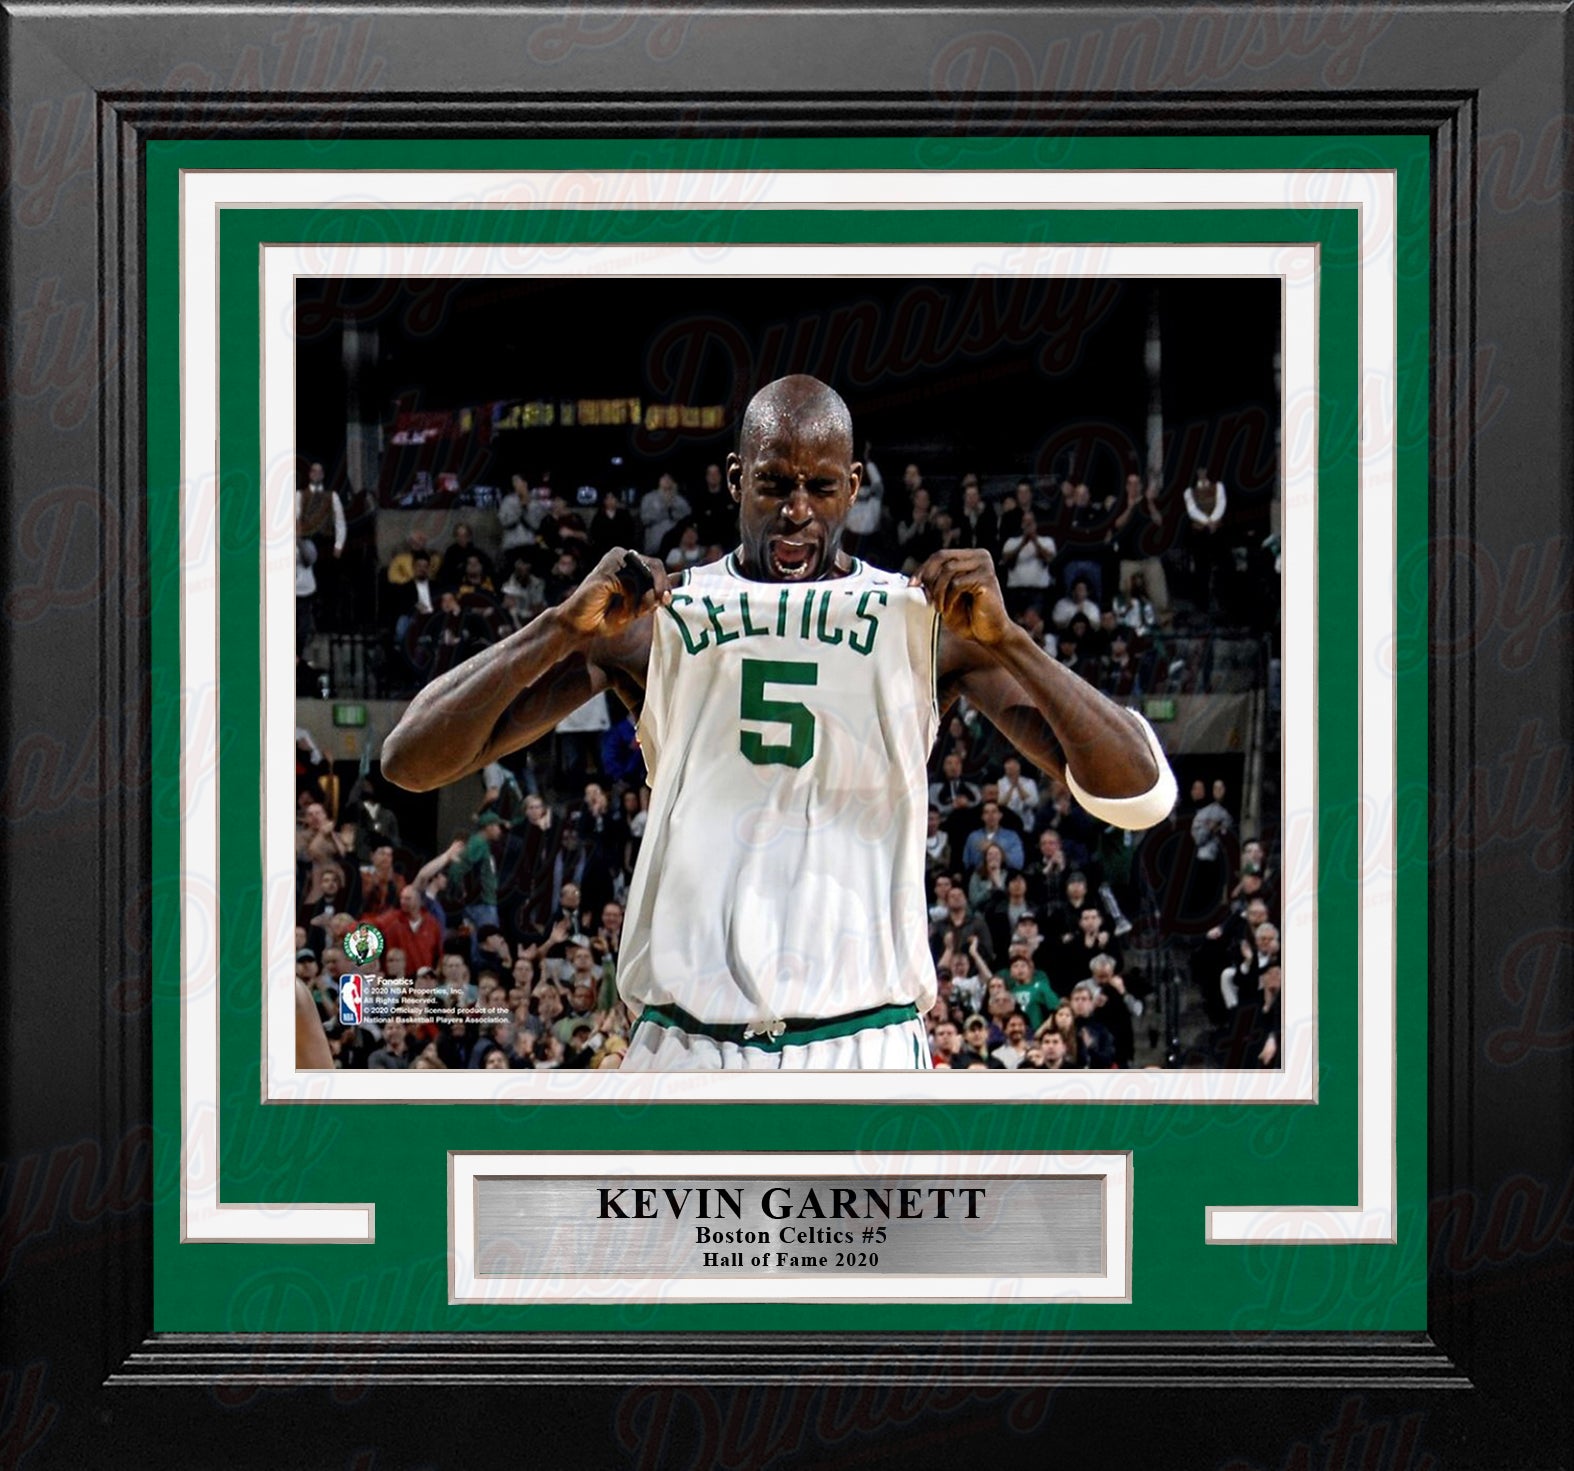 Kevin Garnett Celebration Boston Celtics 8" x 10" Framed Basketball Photo - Dynasty Sports & Framing 